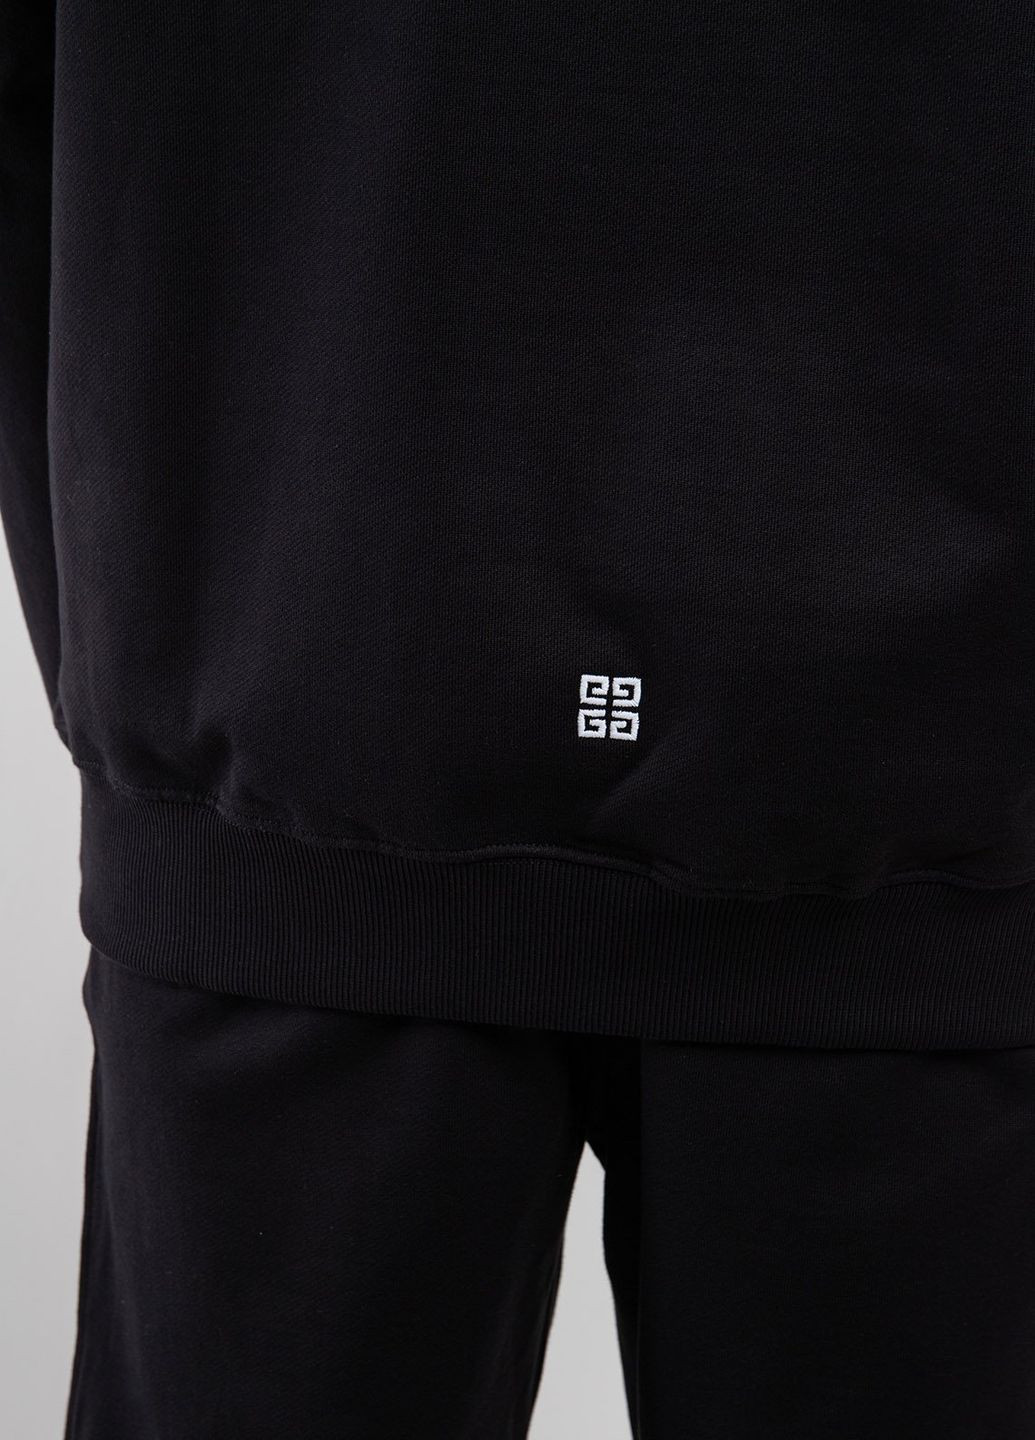 Черный хлопковый свитшот с лого Givenchy (260169246)